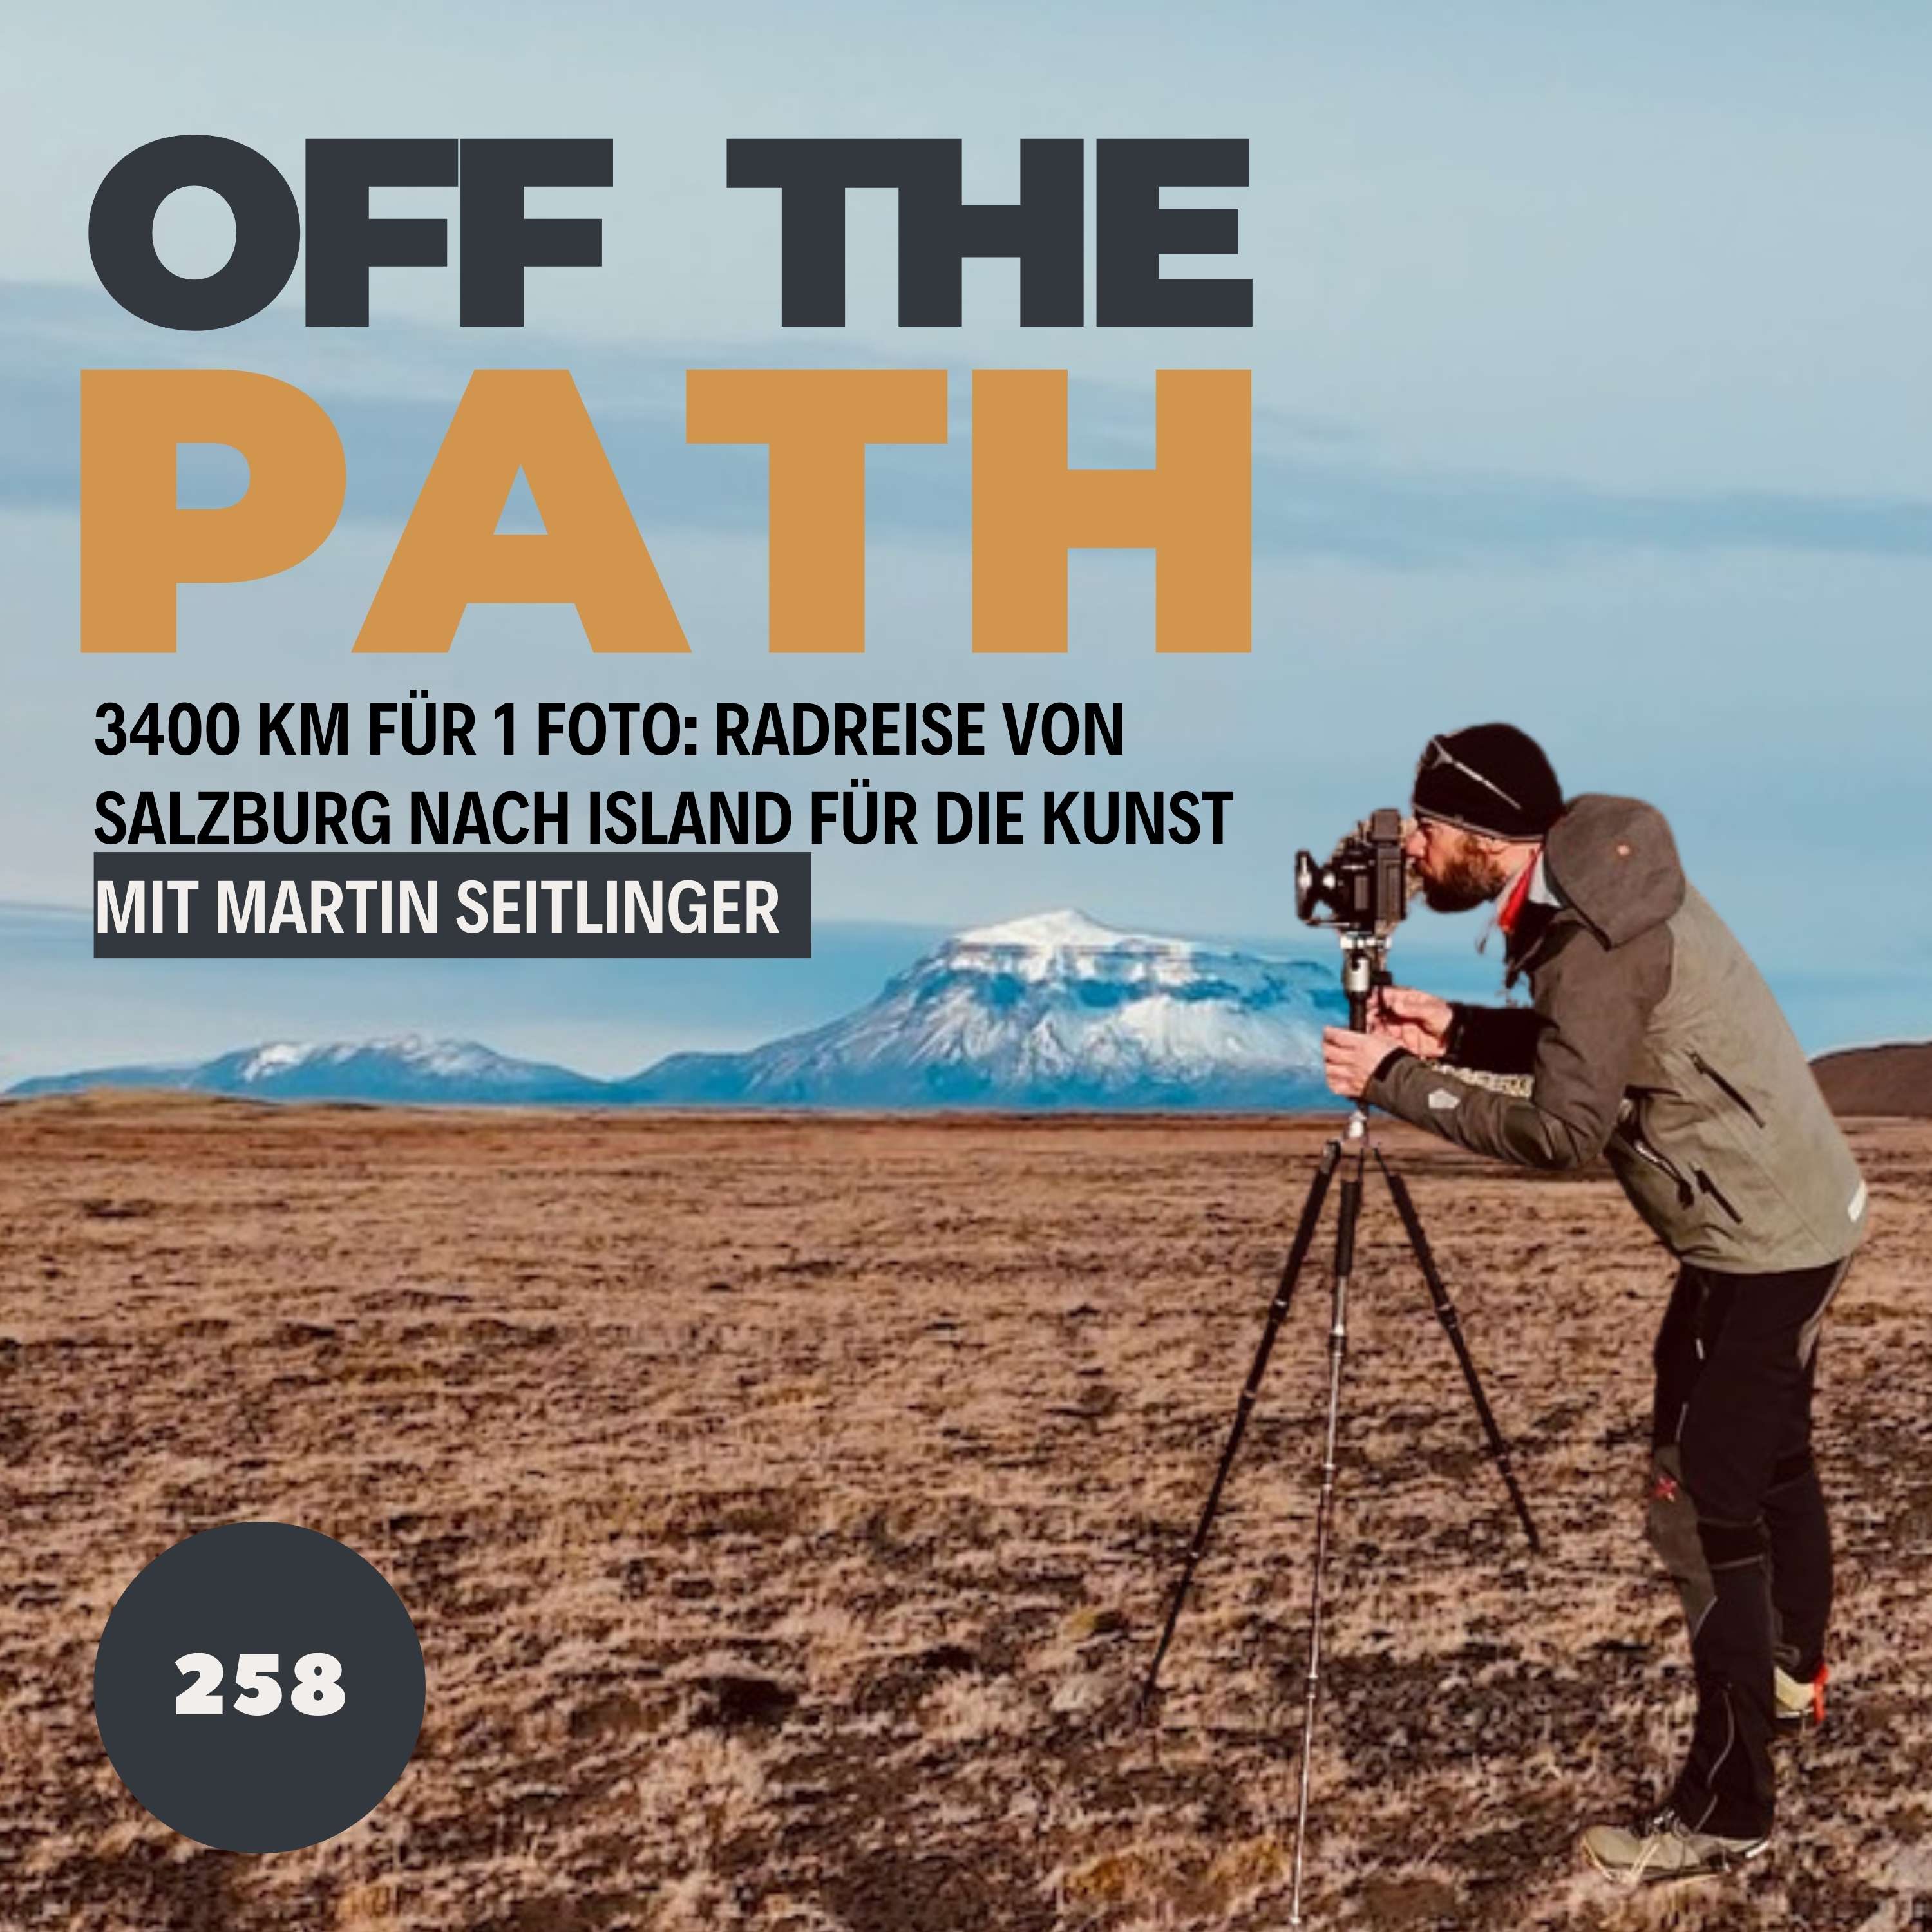 [OTP258] 3400 km für 1 Foto: Martin Seitlingers Radreise von Salzburg nach Island für die Kunst